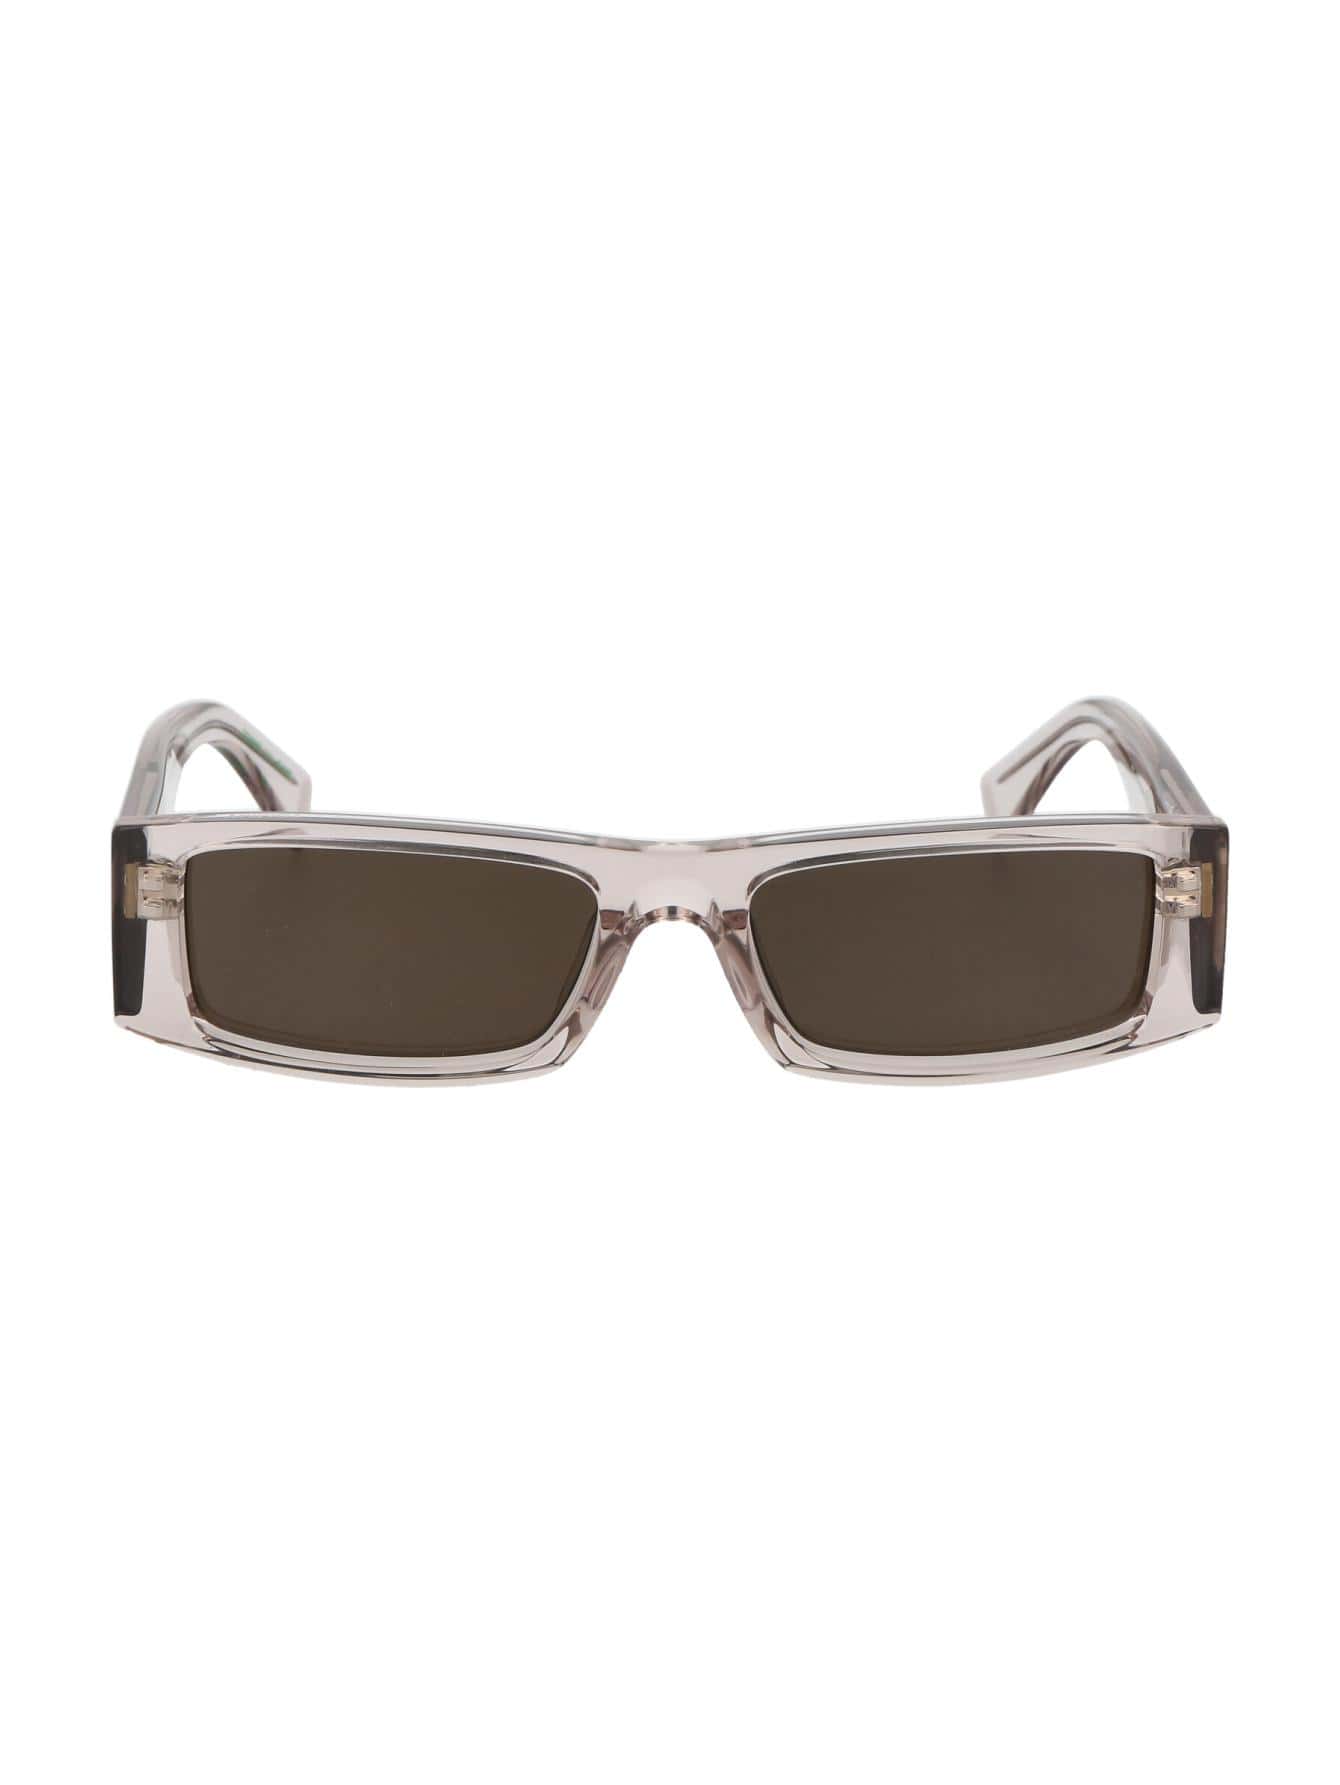 Мужские солнцезащитные очки Tommy Hilfiger DECOR TJ0092S10A70, многоцветный солнцезащитные очки tommy hilfiger серый черный